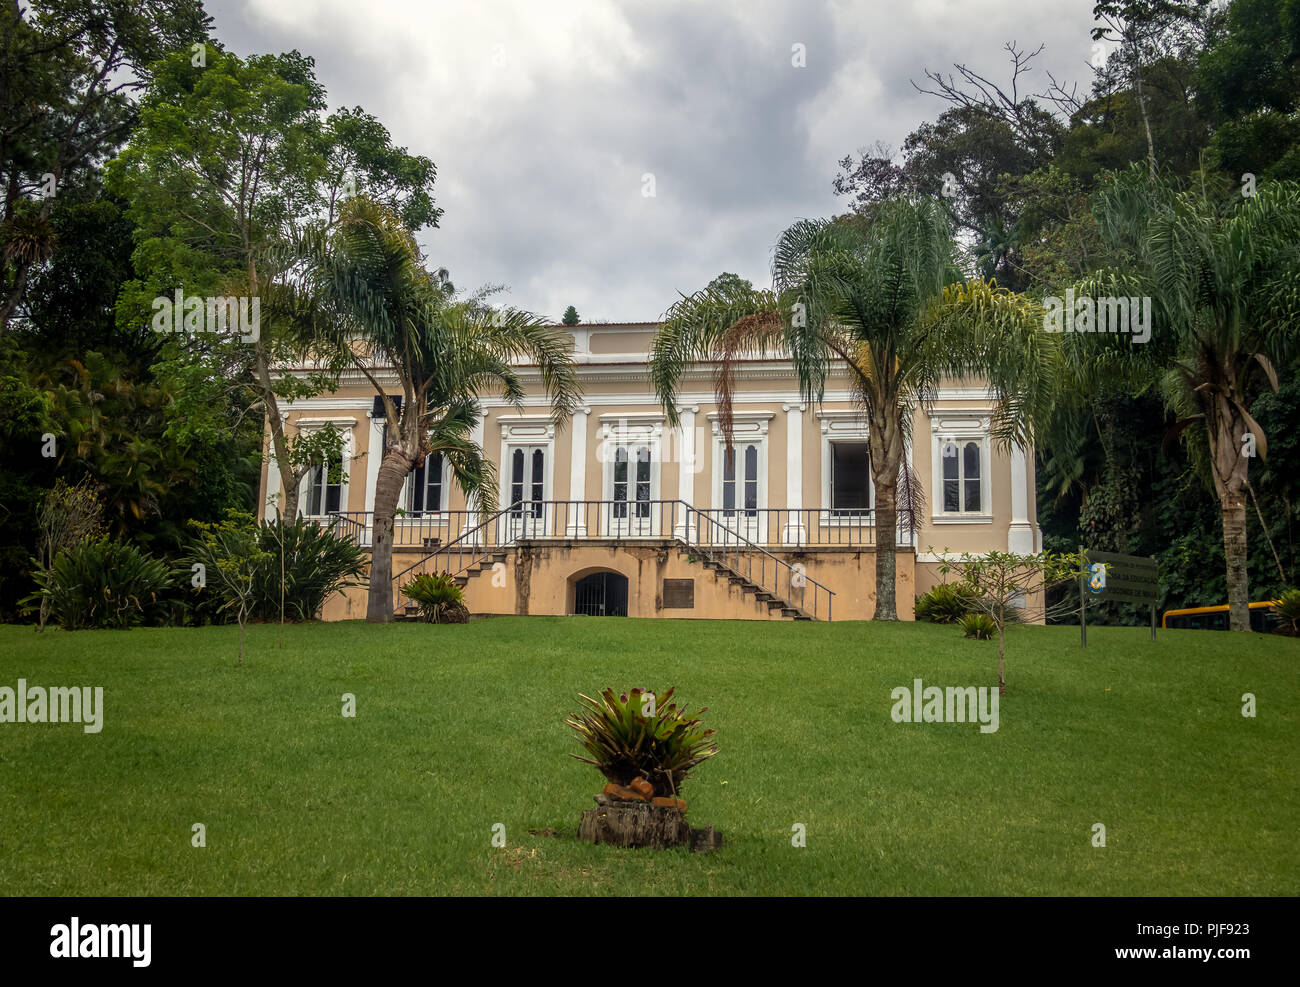 Viscount of Maua House (Visconde de Maua Casa da Educacao) - Petropolis, Rio de Janeiro, Brasil Stock Photo